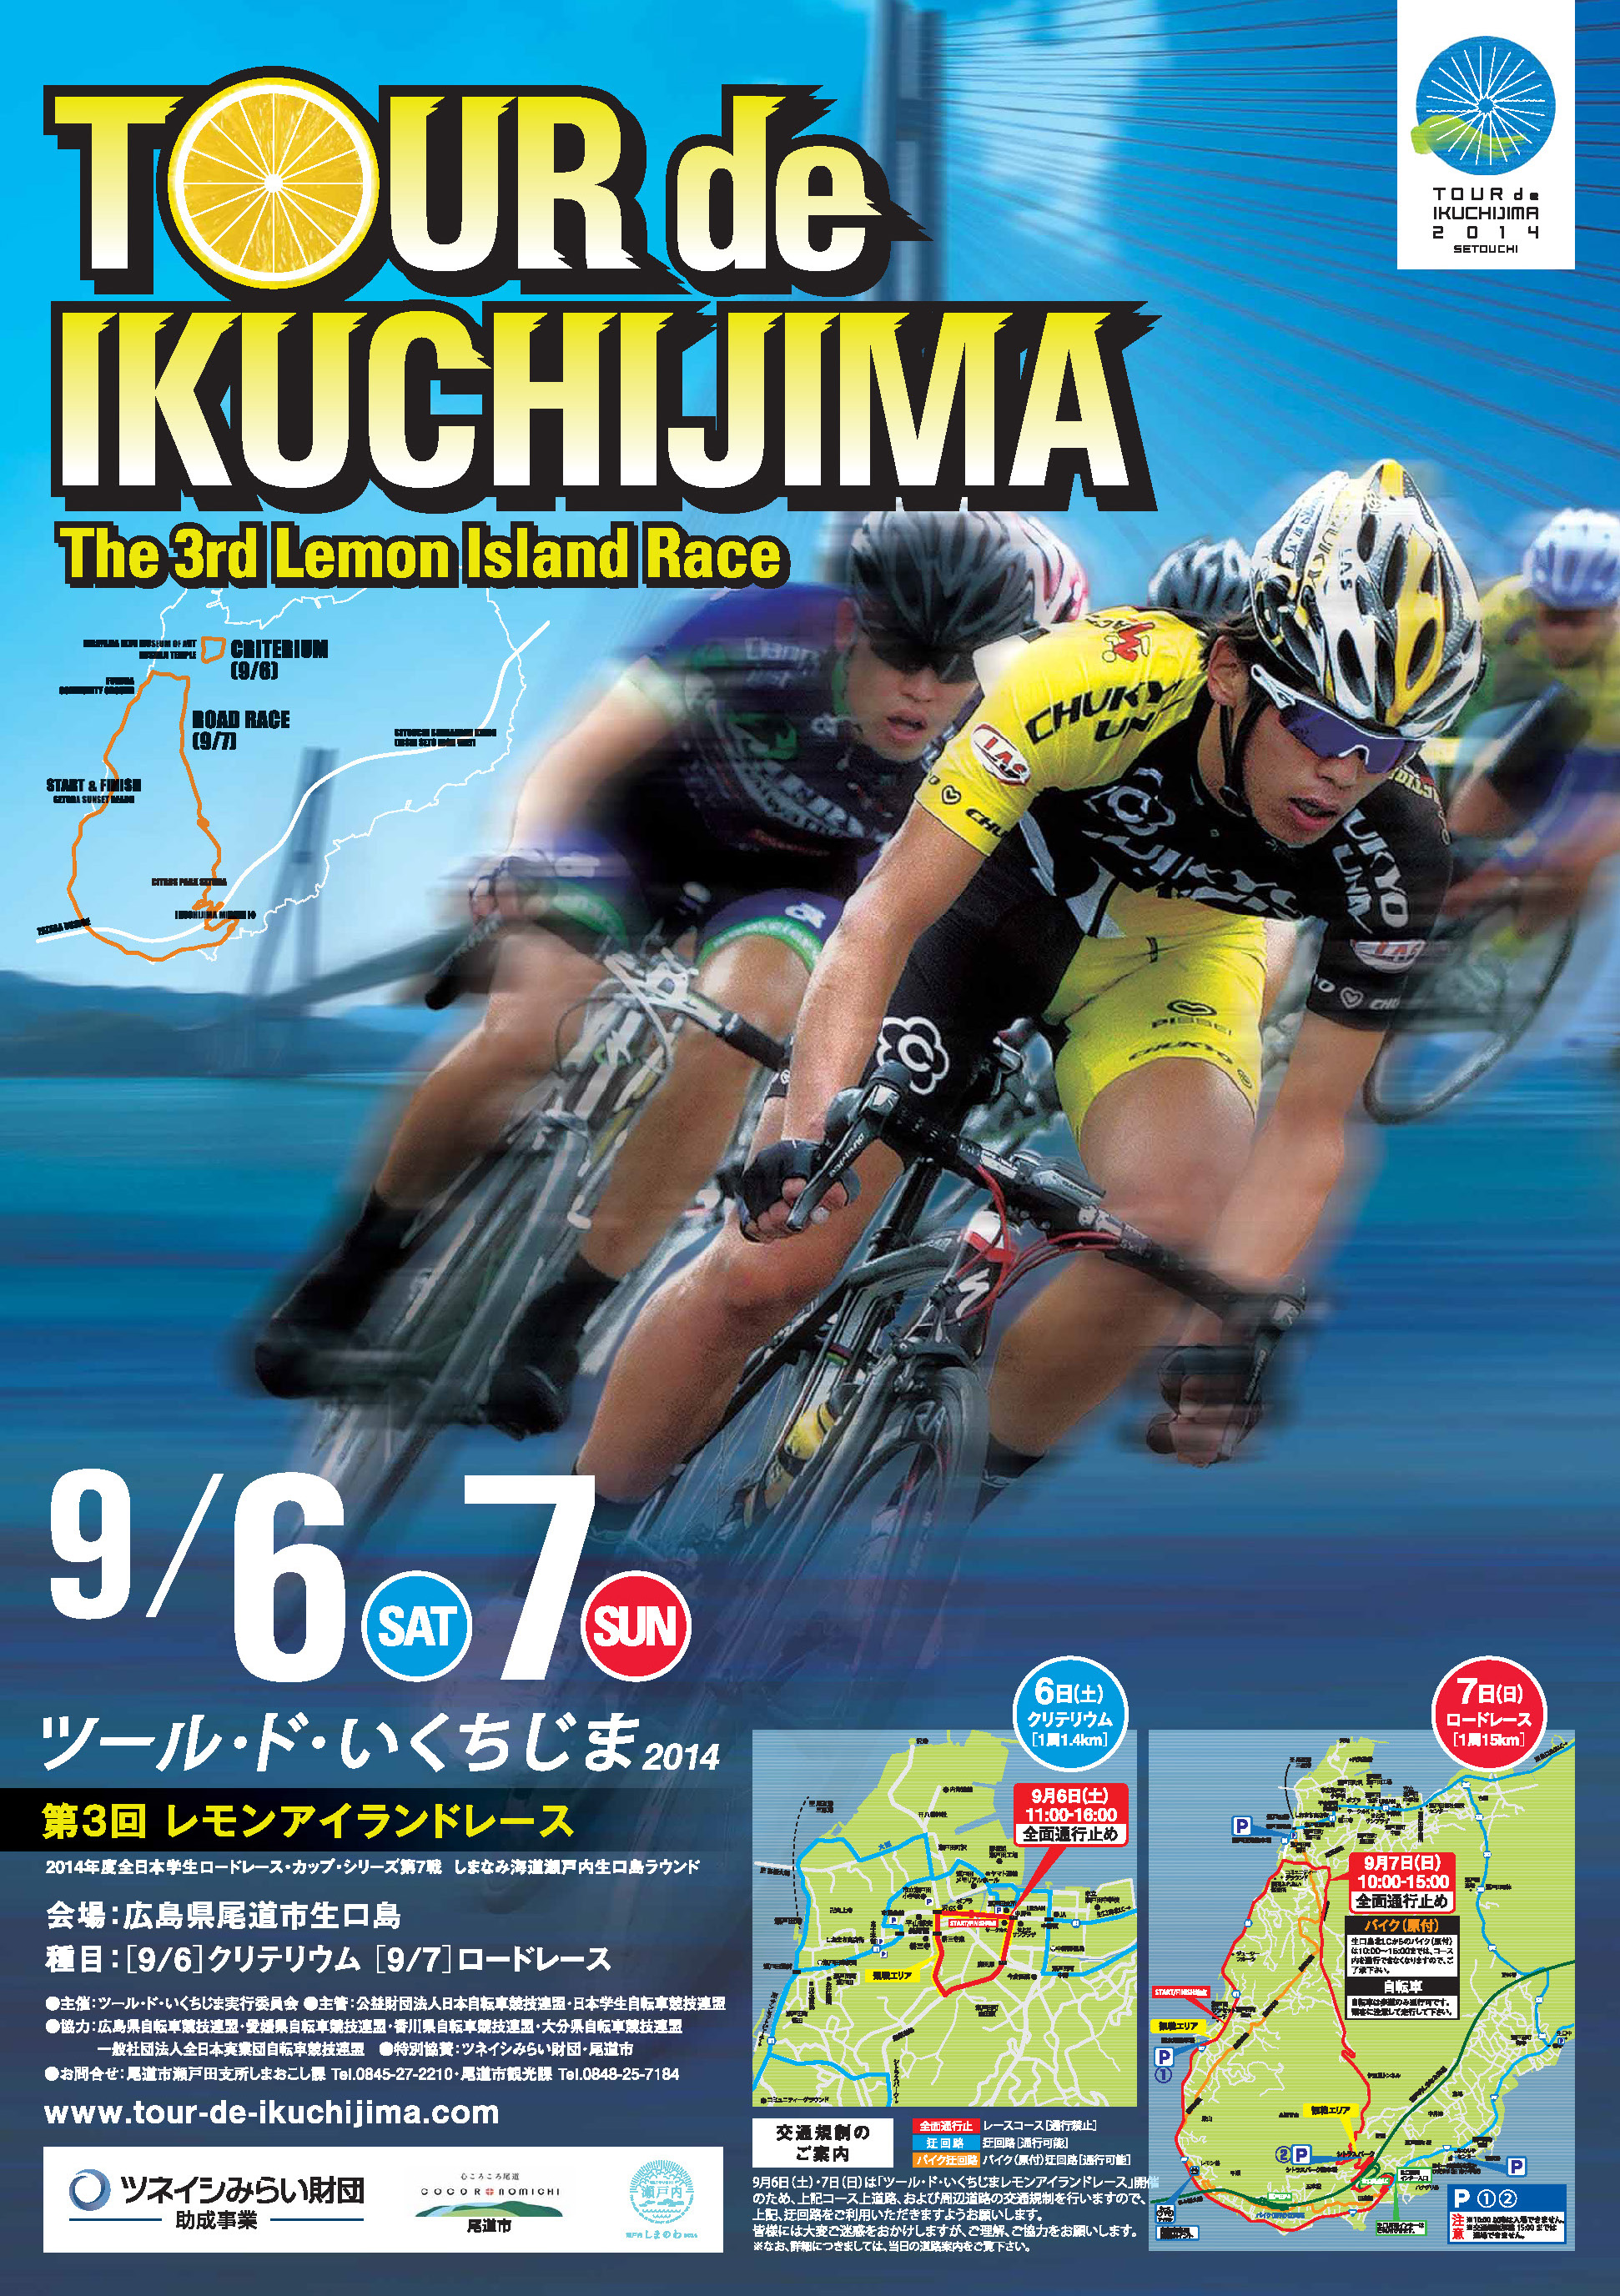 9月6日(土)、7(日)いよいよ開催!日本自転車競技連盟公式レース第3回ツール・ド・いくちじまレモンアイランドレースをツネイシみらい財団が支援